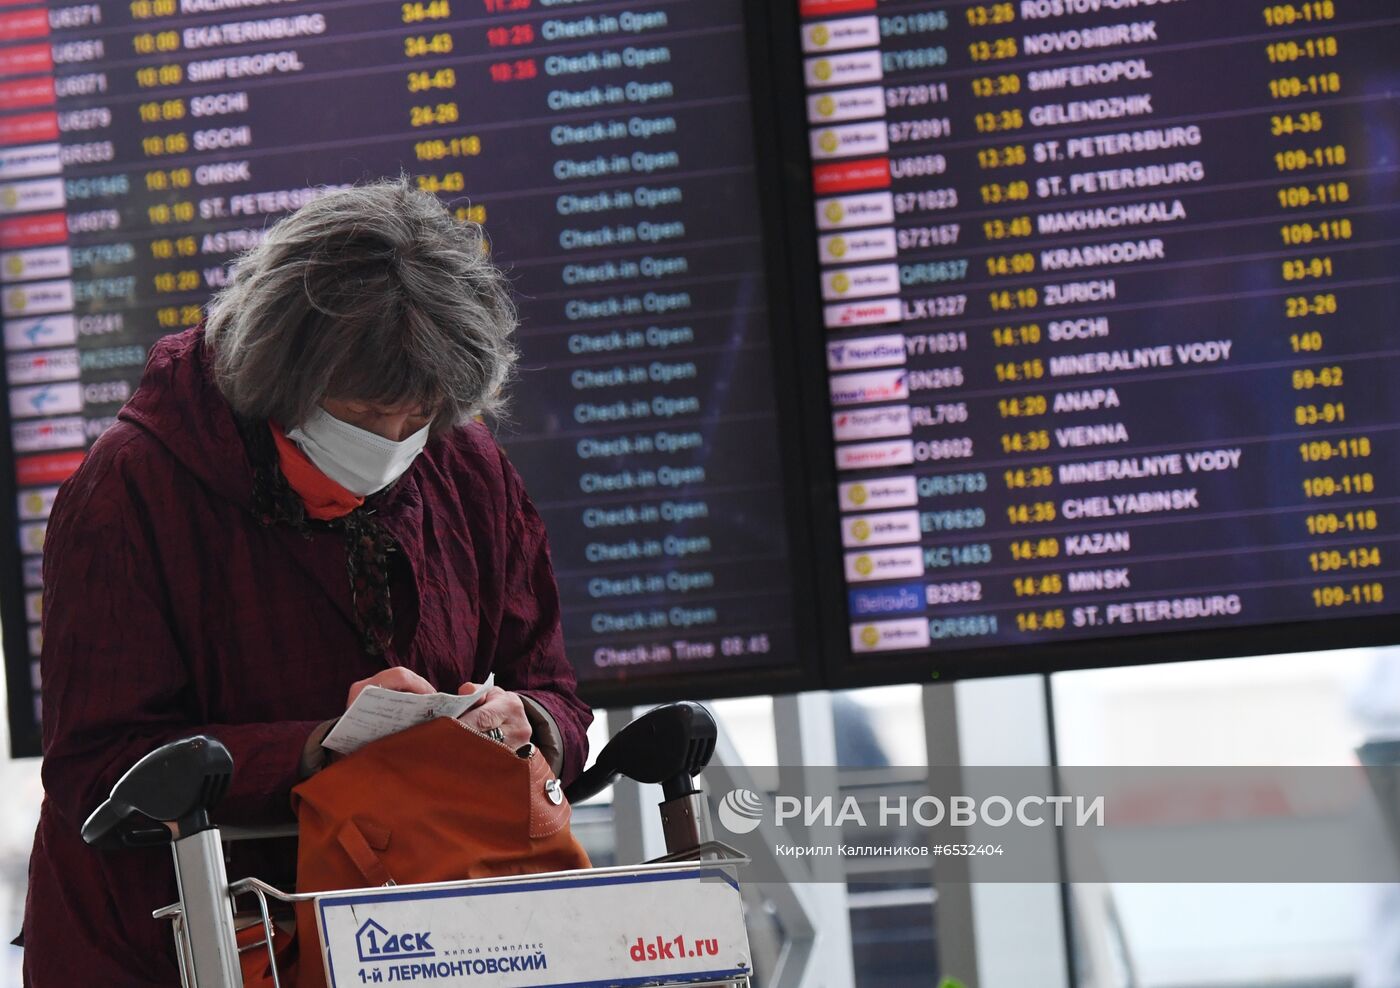 Прилет самолета S7 Airlines в новой ливрее в Домодедово